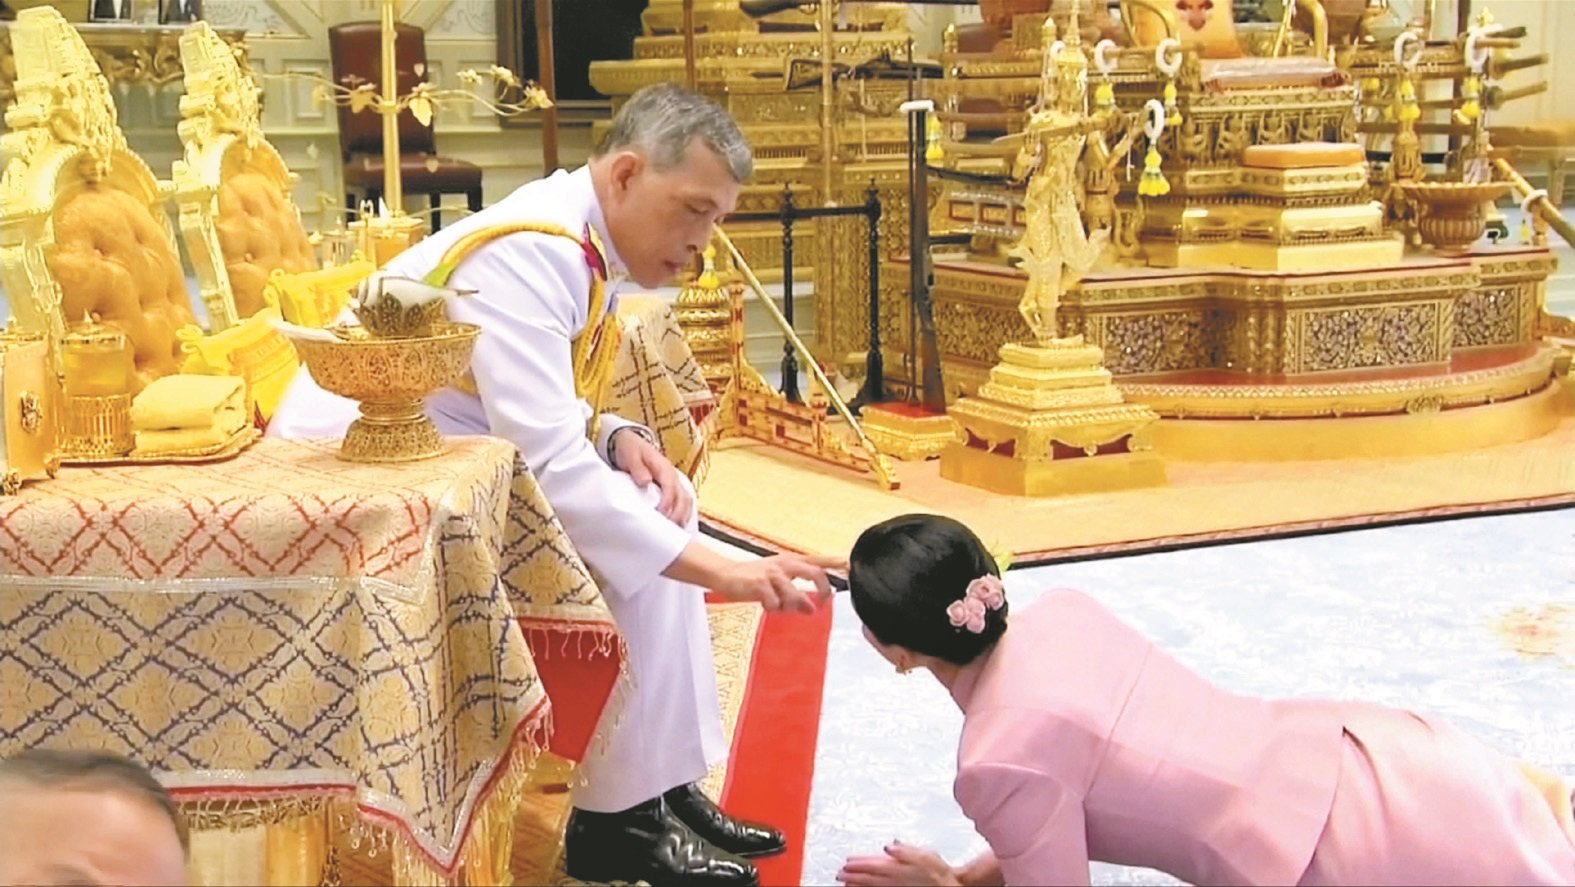 在泰国，国王被视为如同神一般的存在，结婚仪式中，素堤达趴在地上接受哇集拉隆功赠与的皇家水和礼物，随后被邀请坐在国王身旁，并被授予王后头衔。